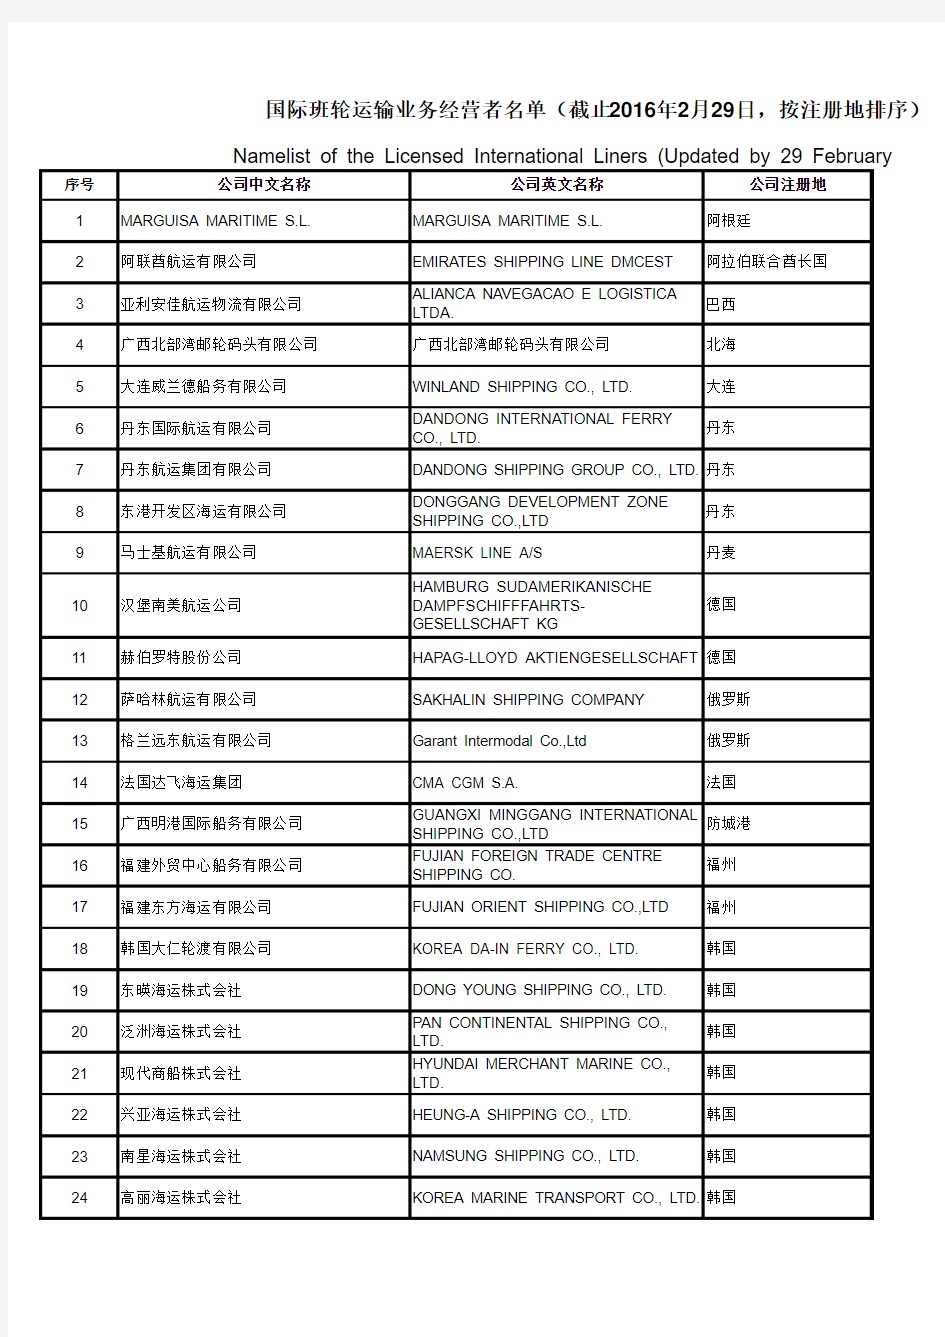 国际班轮运输业务经营者名单(截止到2016年2月29日)xls